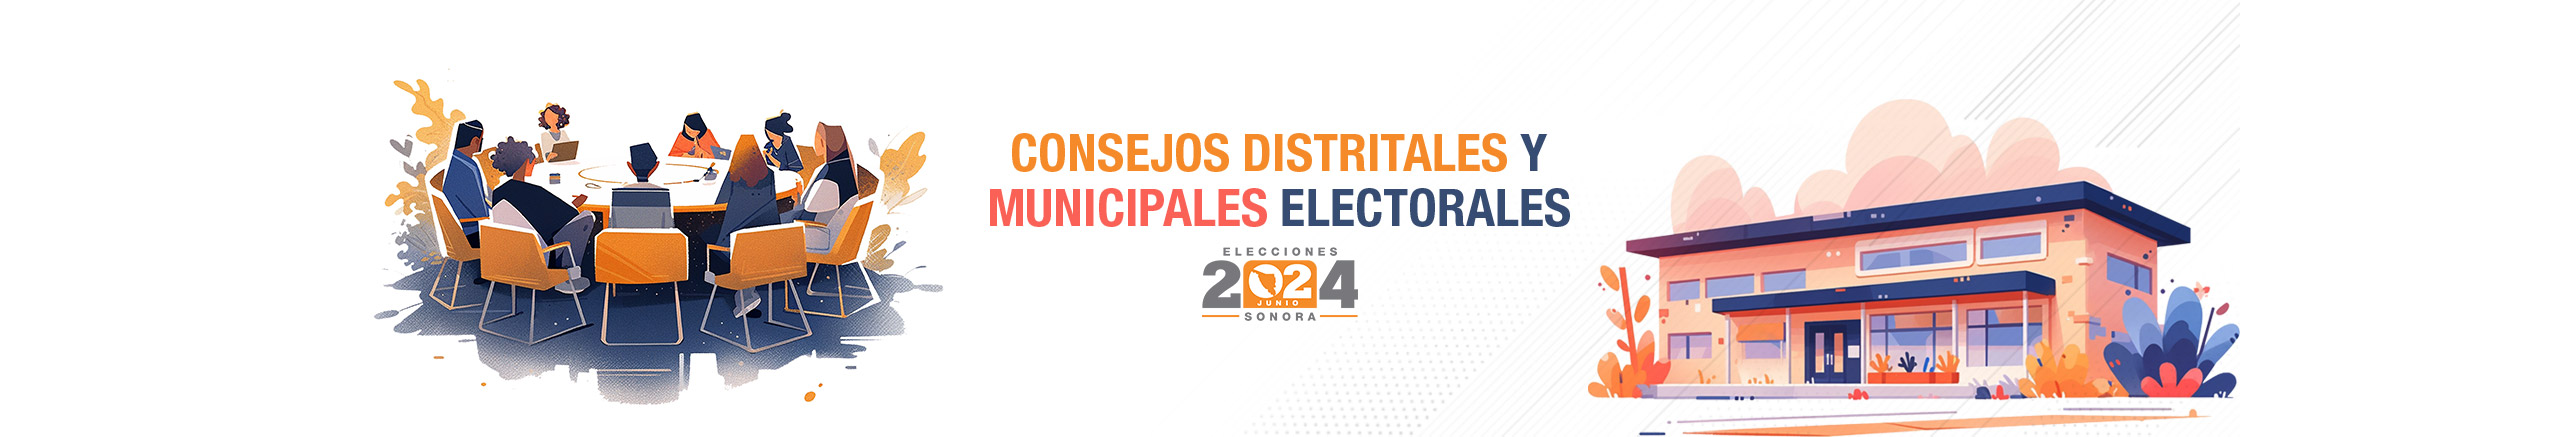 Convocatoria para integrar los Consejos Distritales y Municipales Electorales